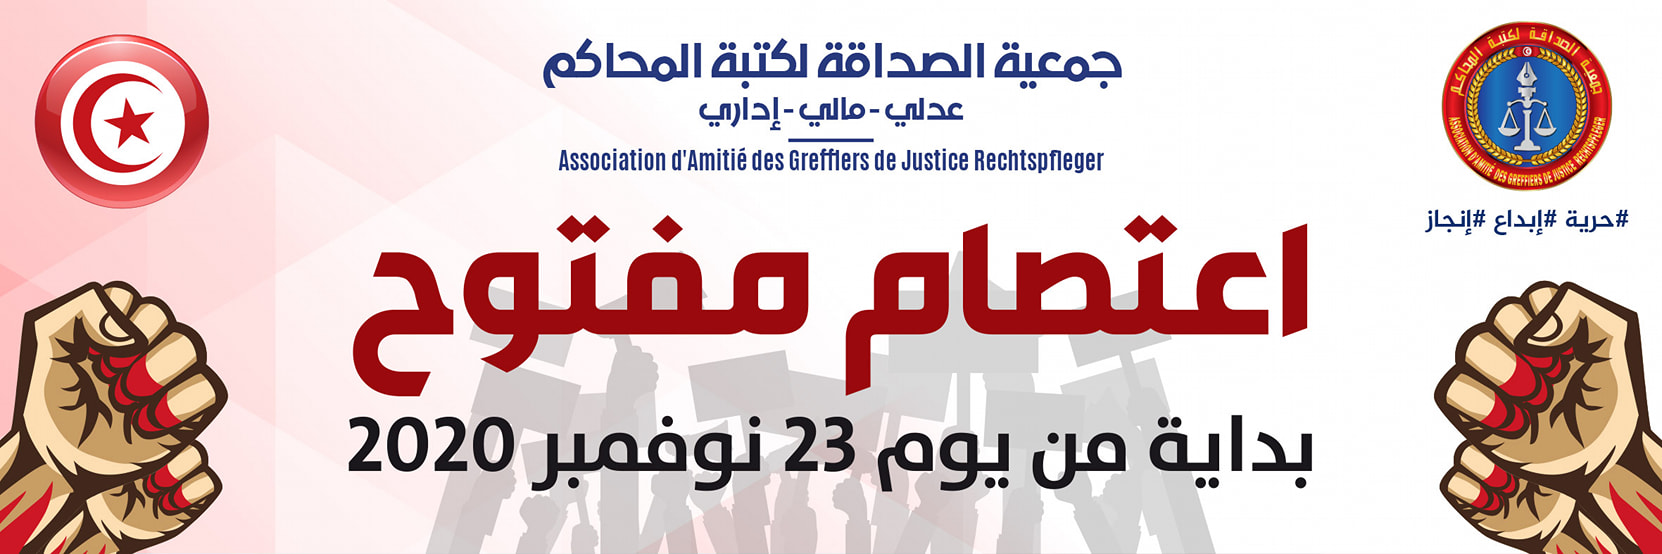 Tunisie: Après les Magistrats, les greffiers de justice protestent